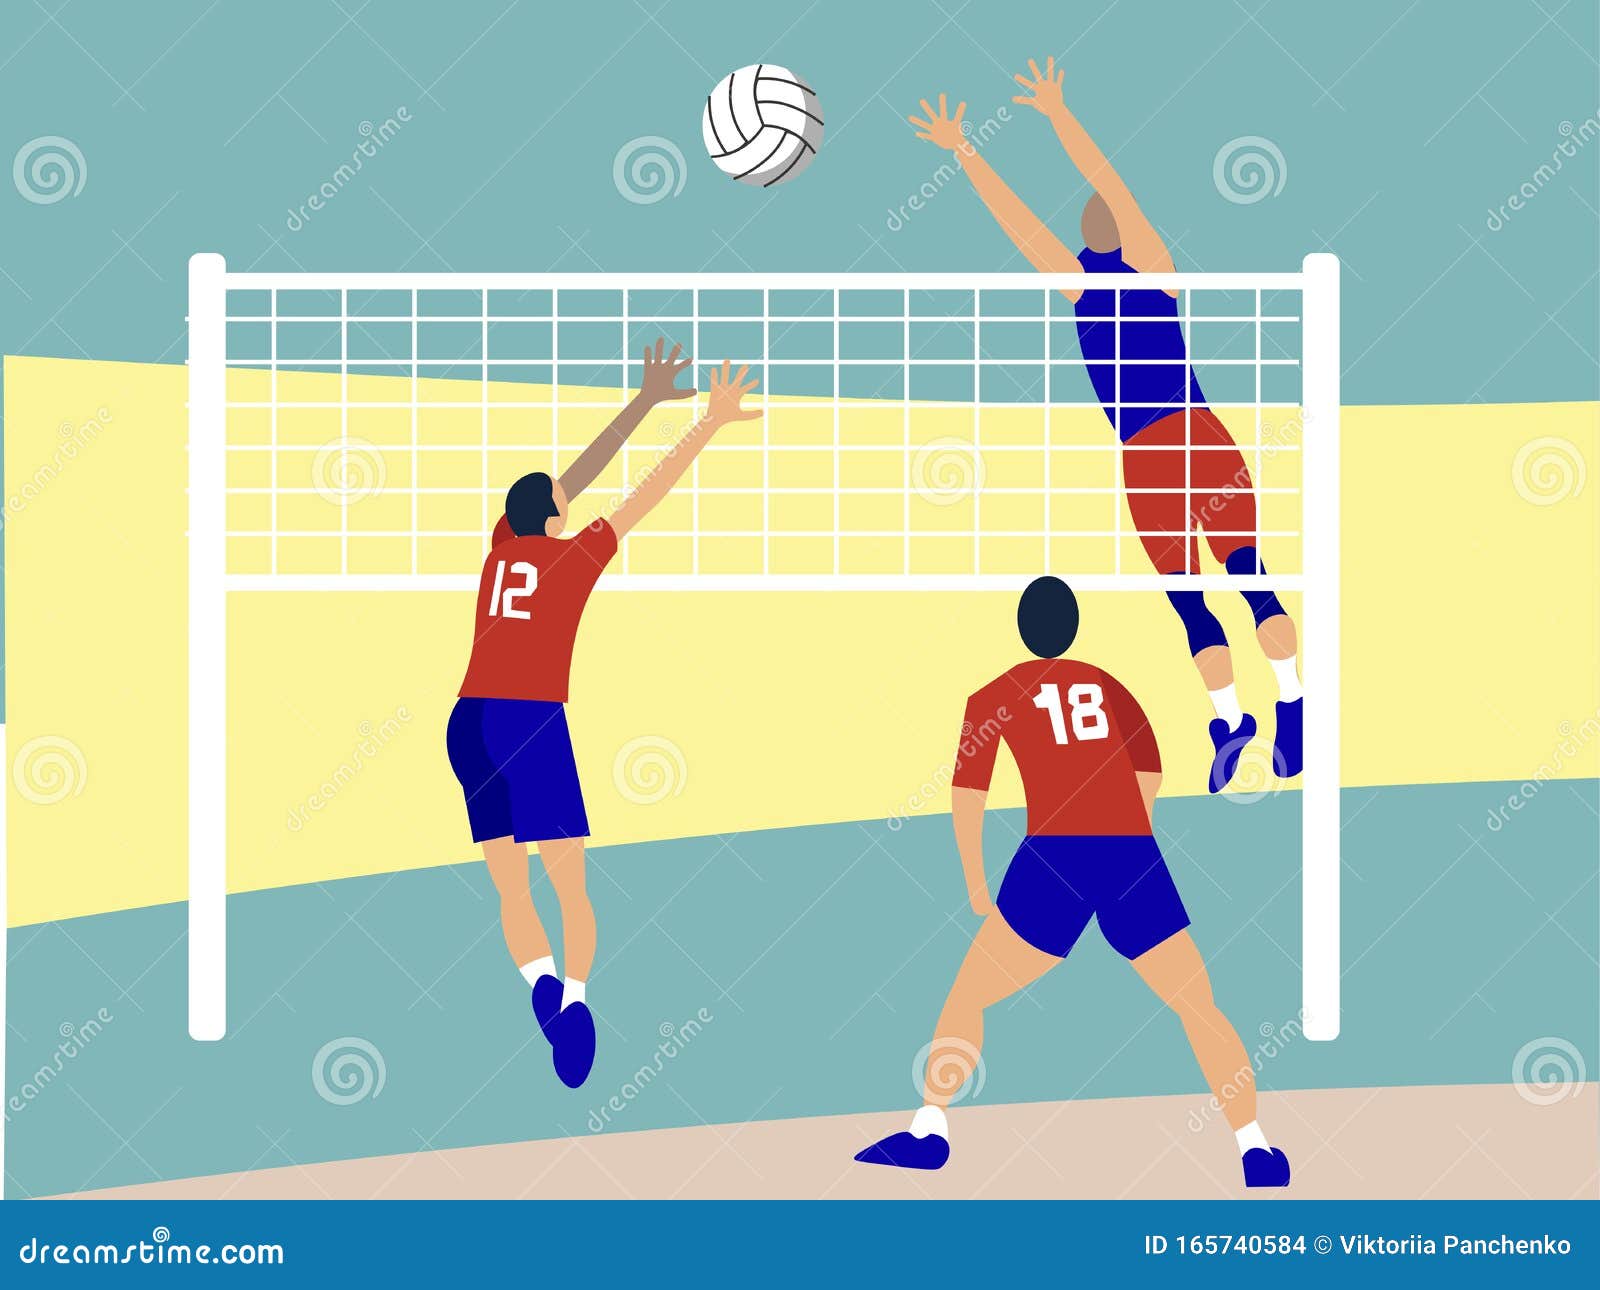 Deporte De Contacto, Voleibol En Estilo Minimalista Dibujo Plano De  Caricatura Stock de ilustración - Ilustración de exterior, ajuste: 165740584